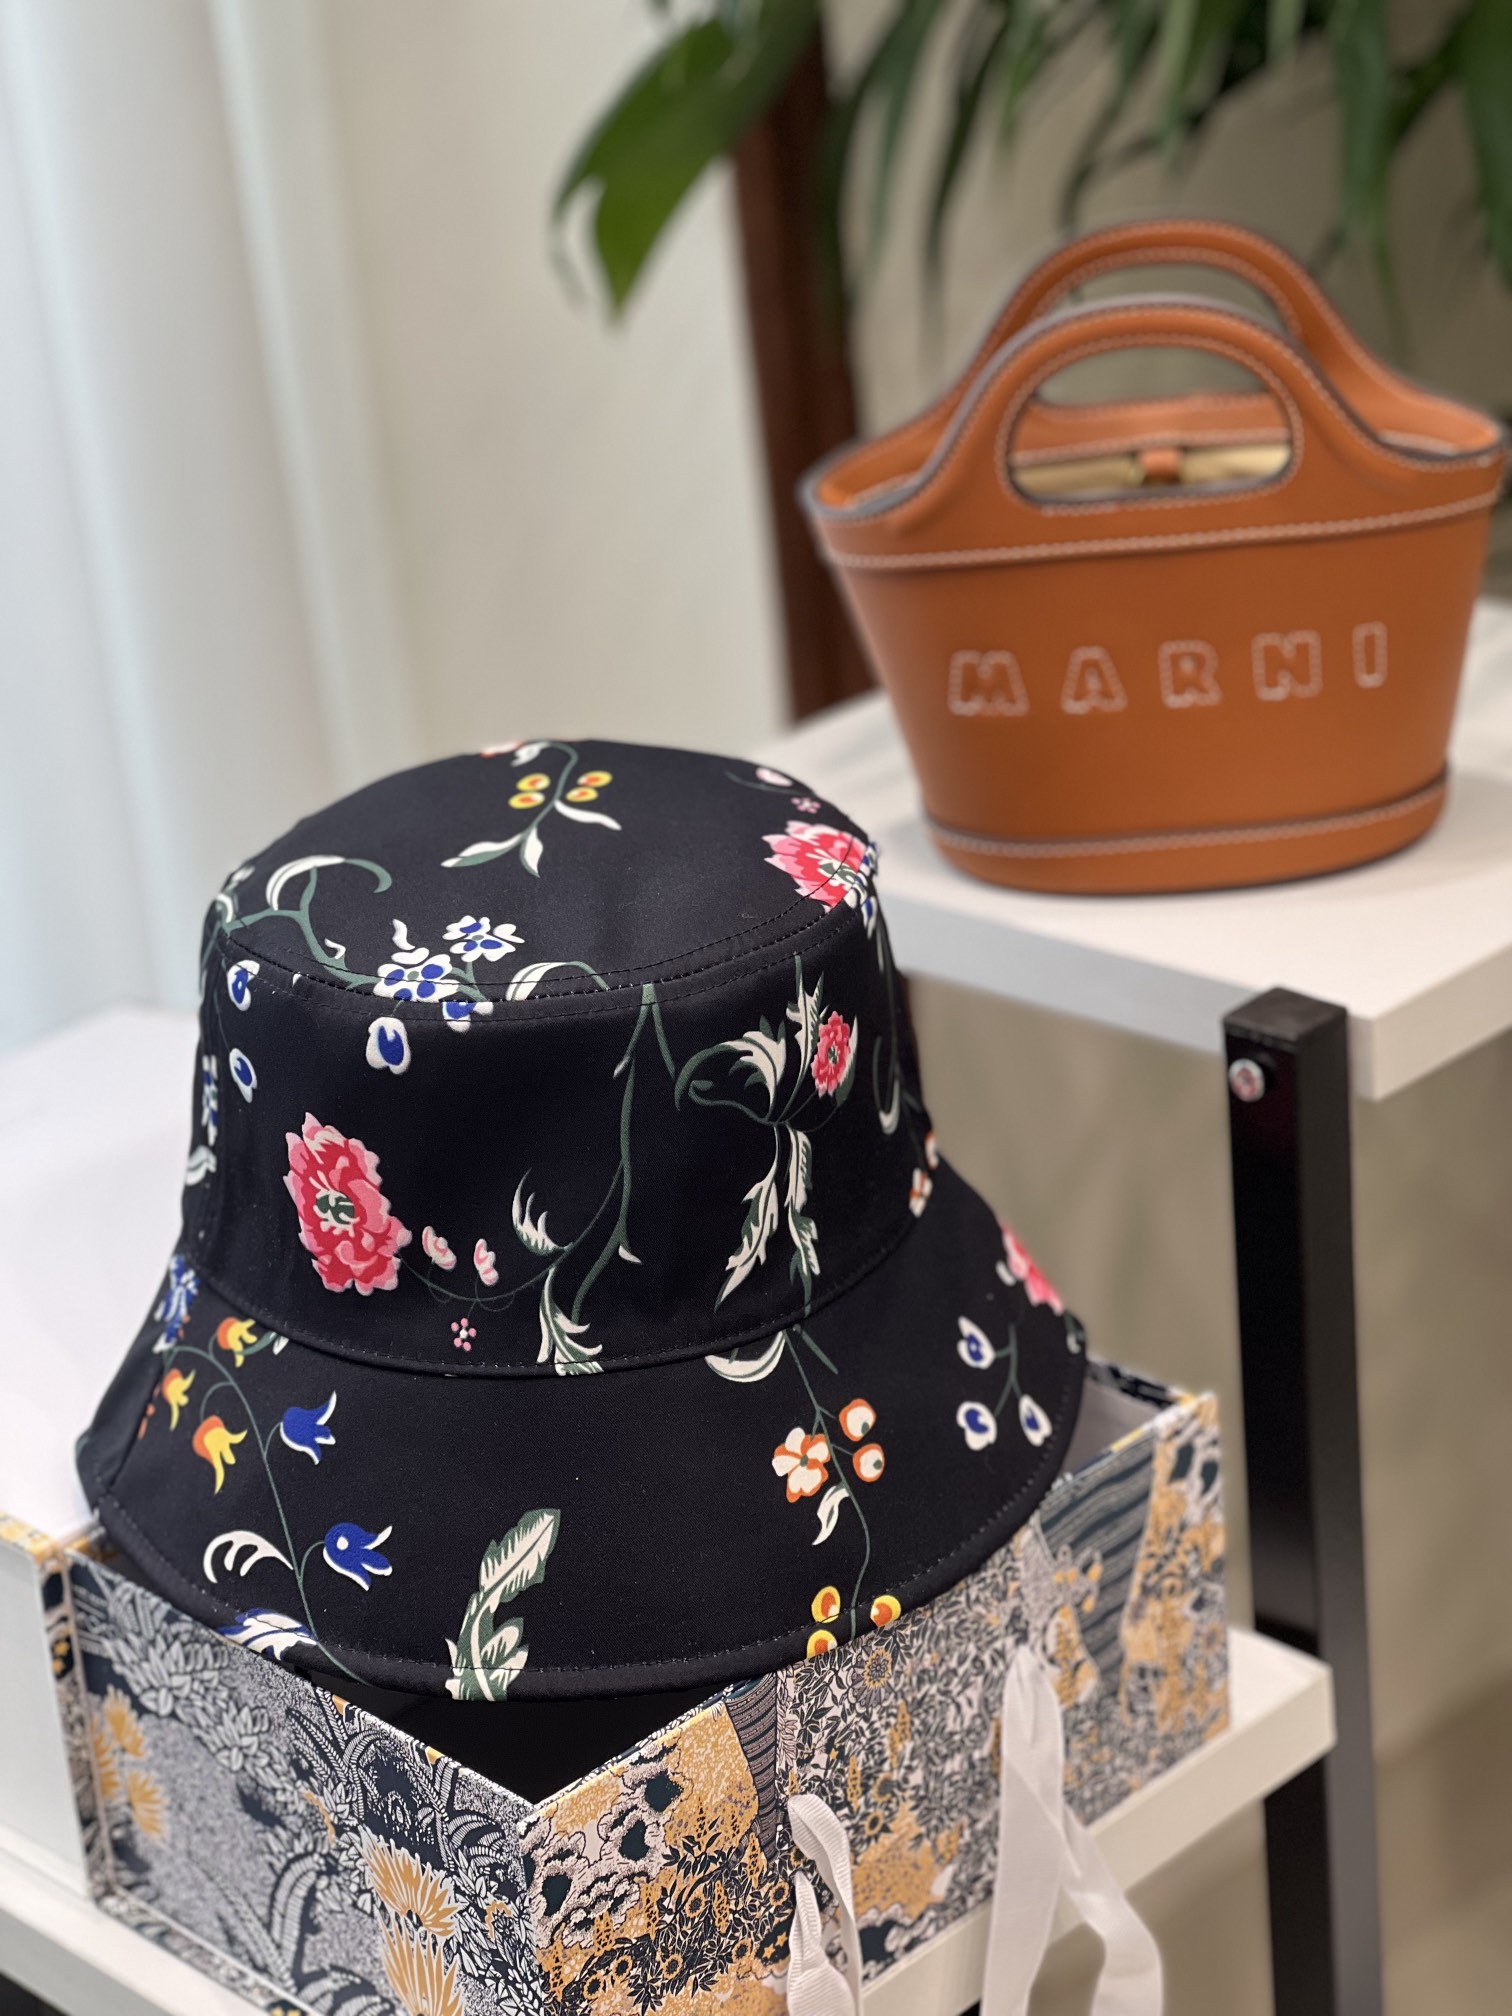 pyedsj配礼盒包装 24最新Di*r迪奥 新款花卉双面印花渔夫帽 精致純也格调很有感觉，很酷很时尚